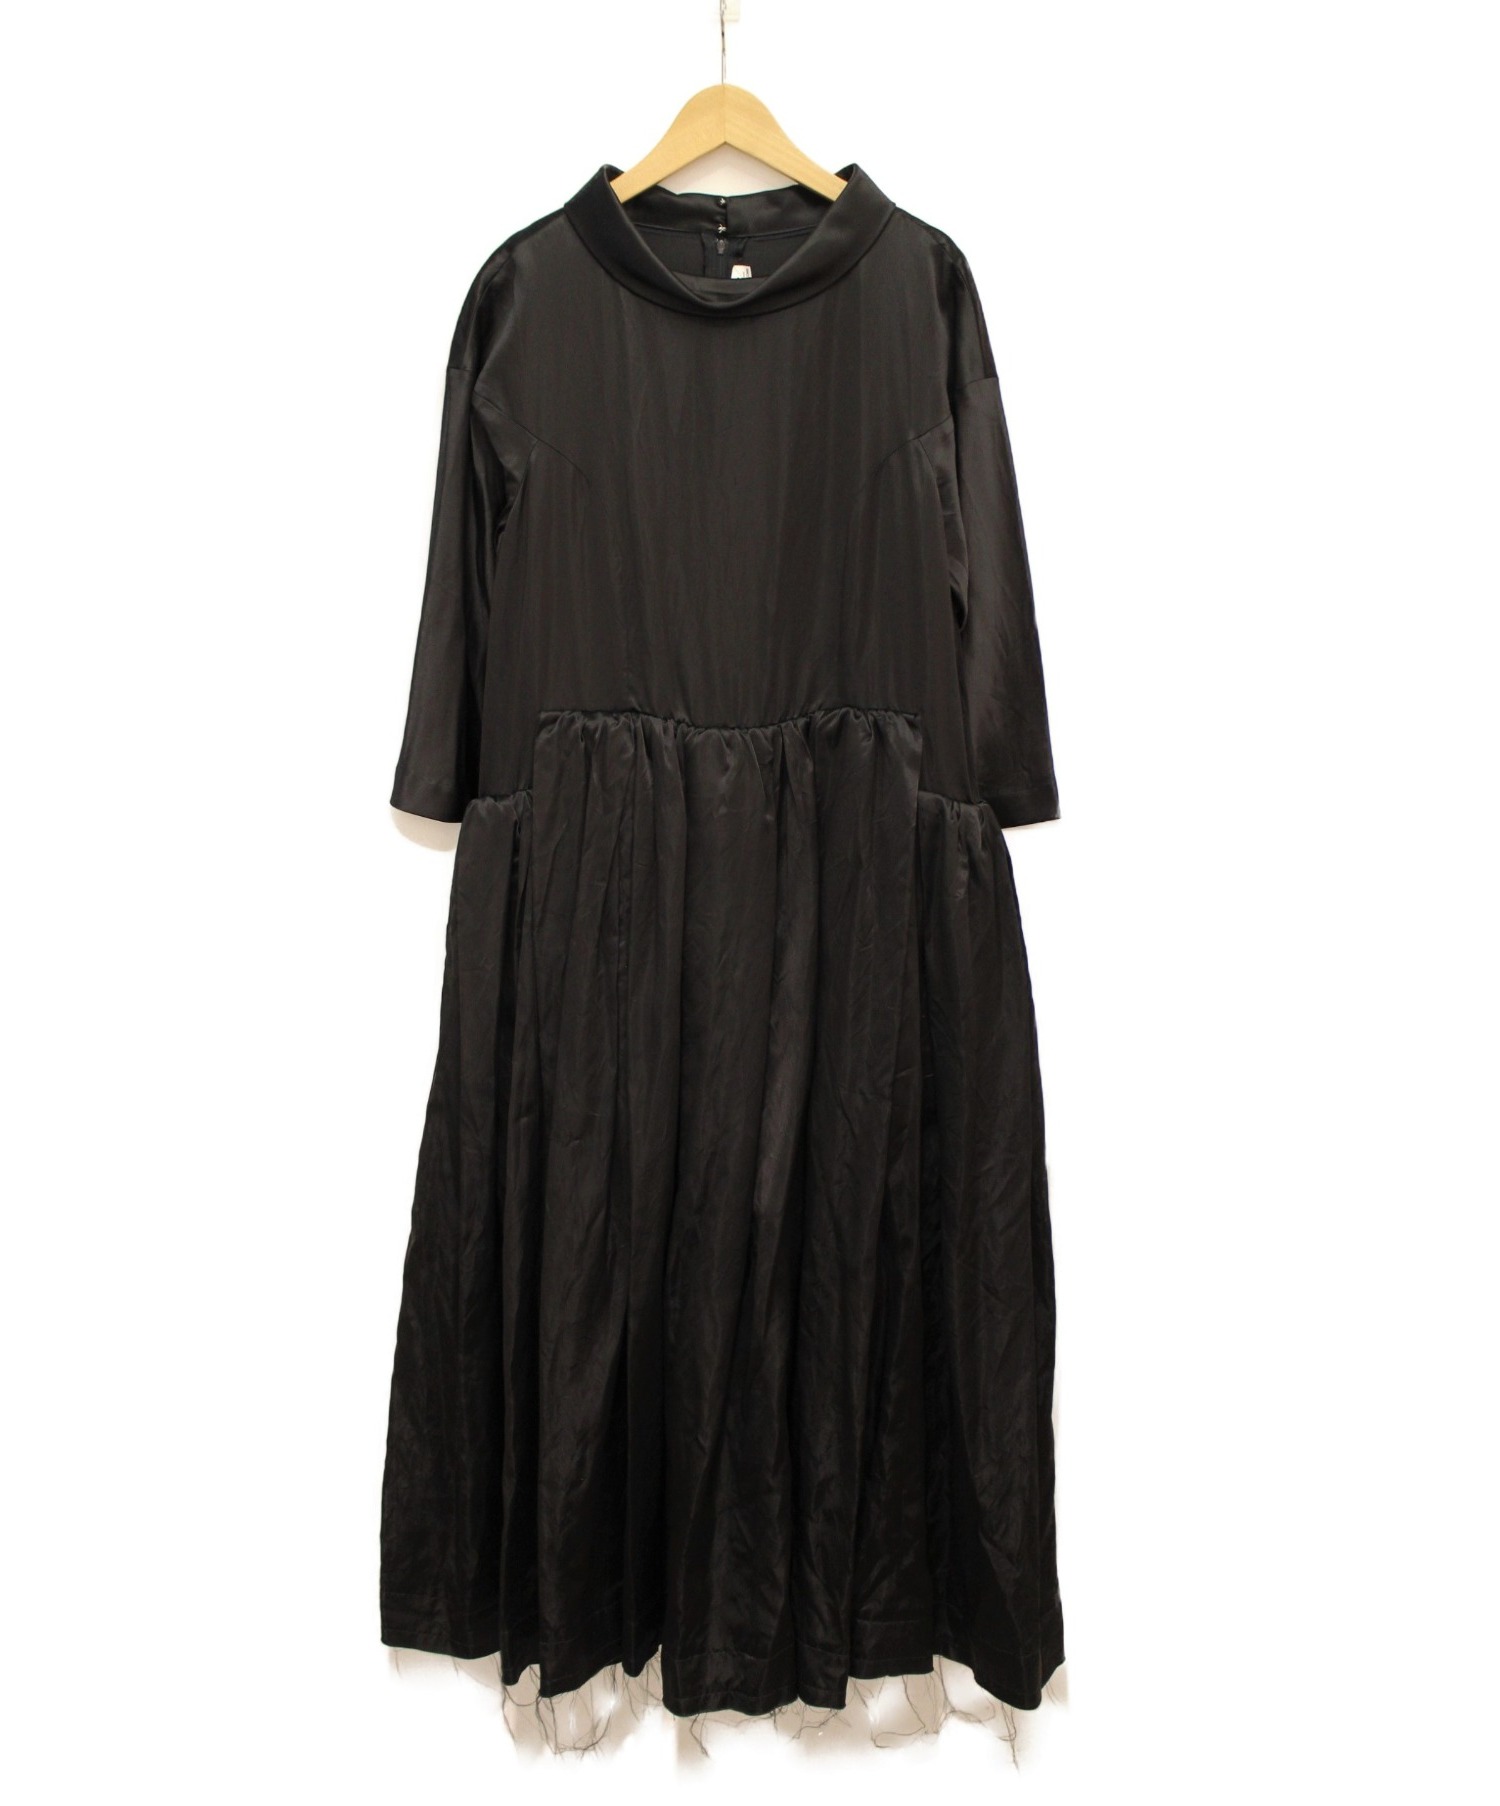 幅広type コムデギャルソン ワンピース ドレス 黒 サイズS